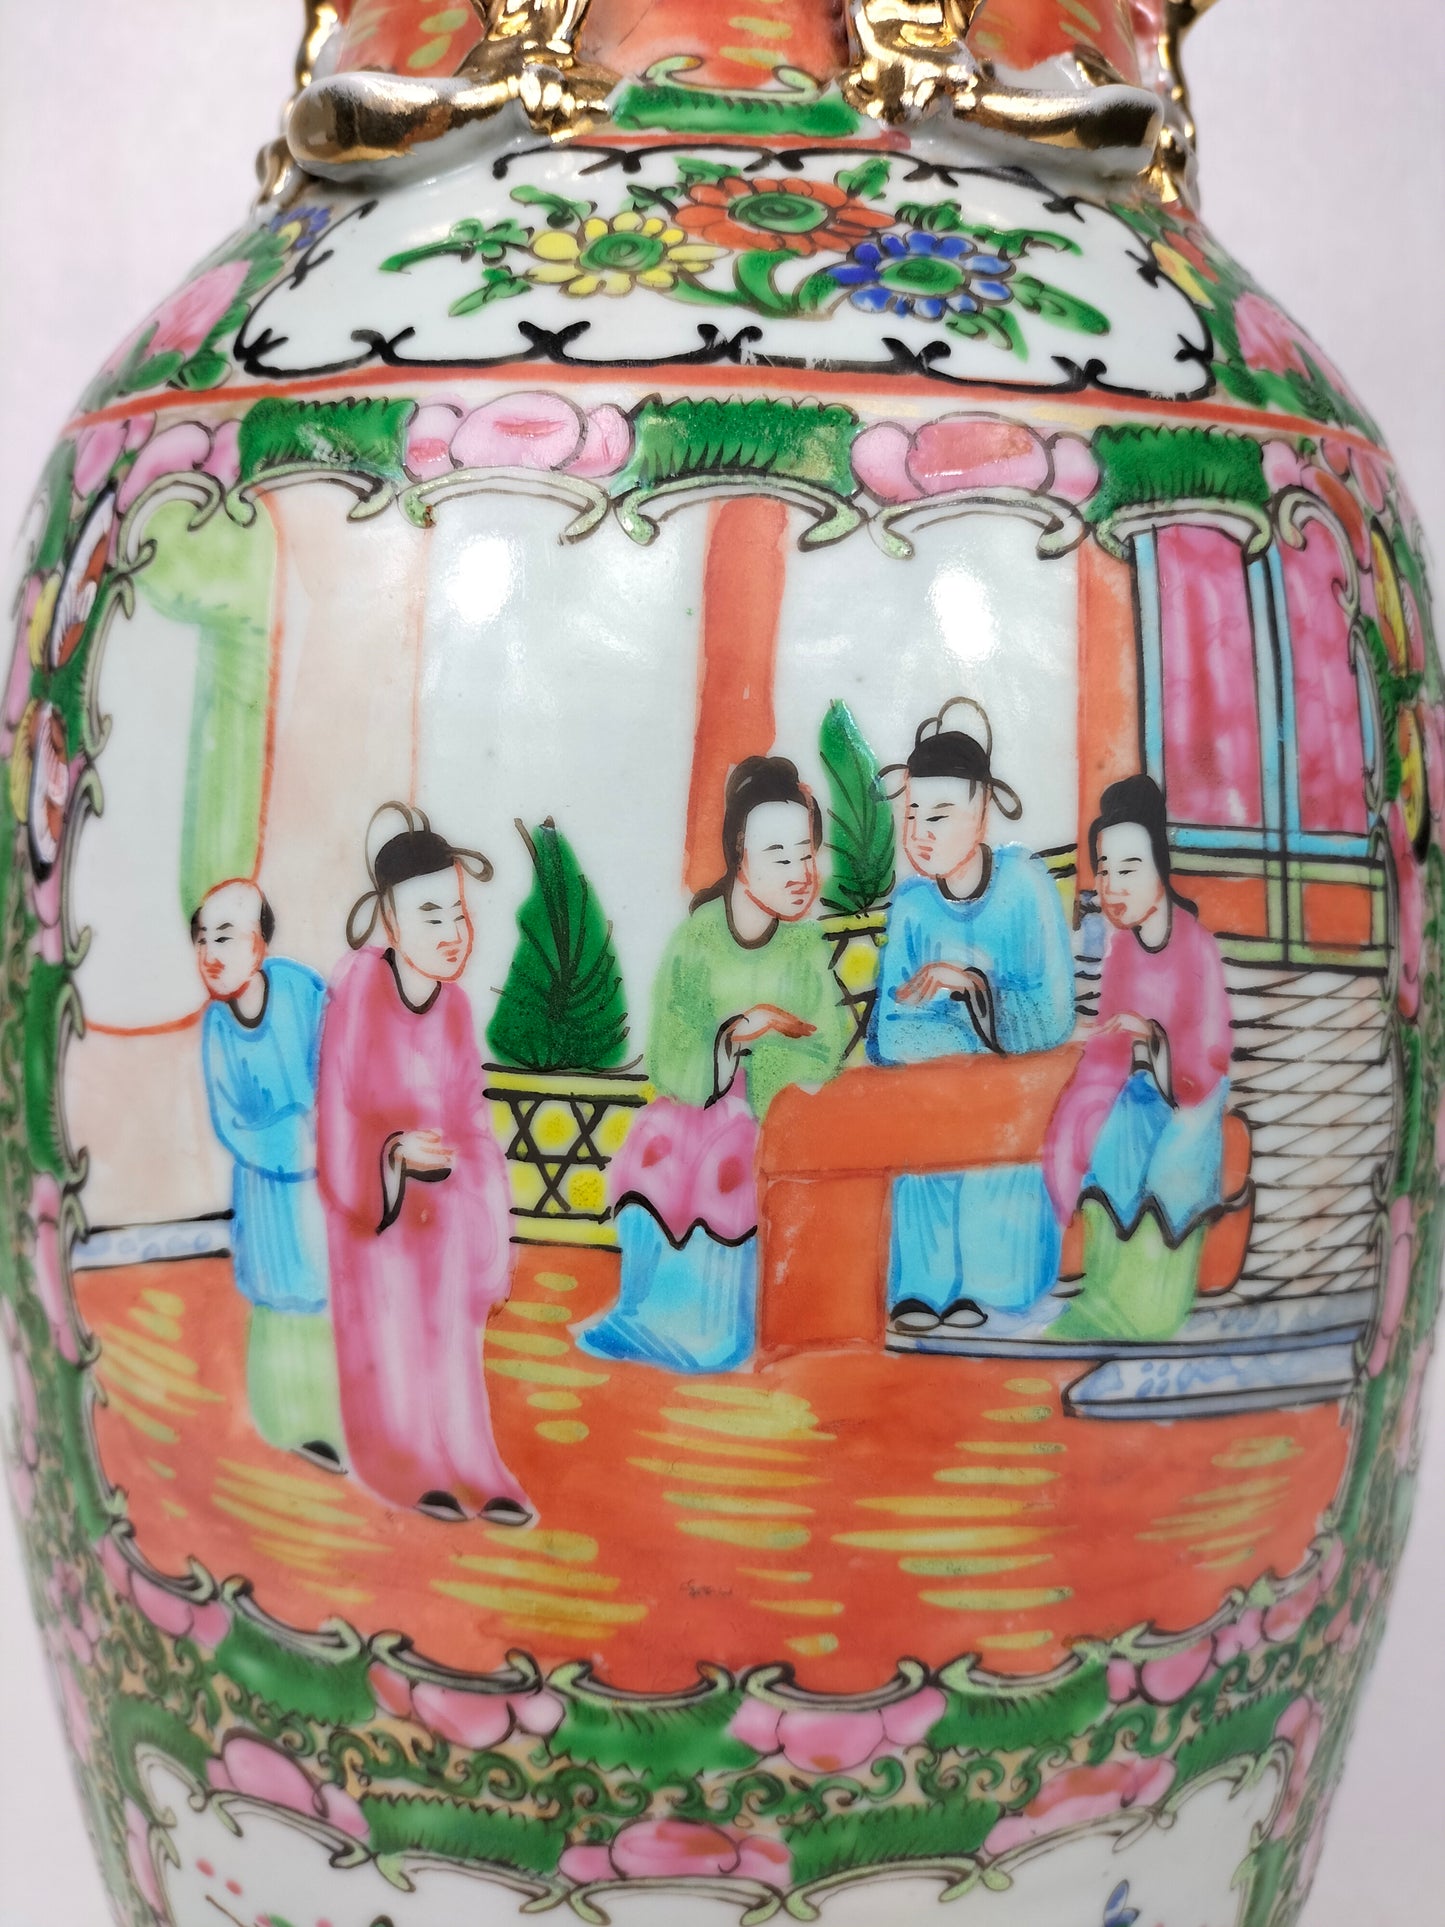 Vase médaillon rose canton chinois antique à décor de personnages et de motifs floraux // Guangzhou - Chine - Dynastie Qing - 19ème siècle